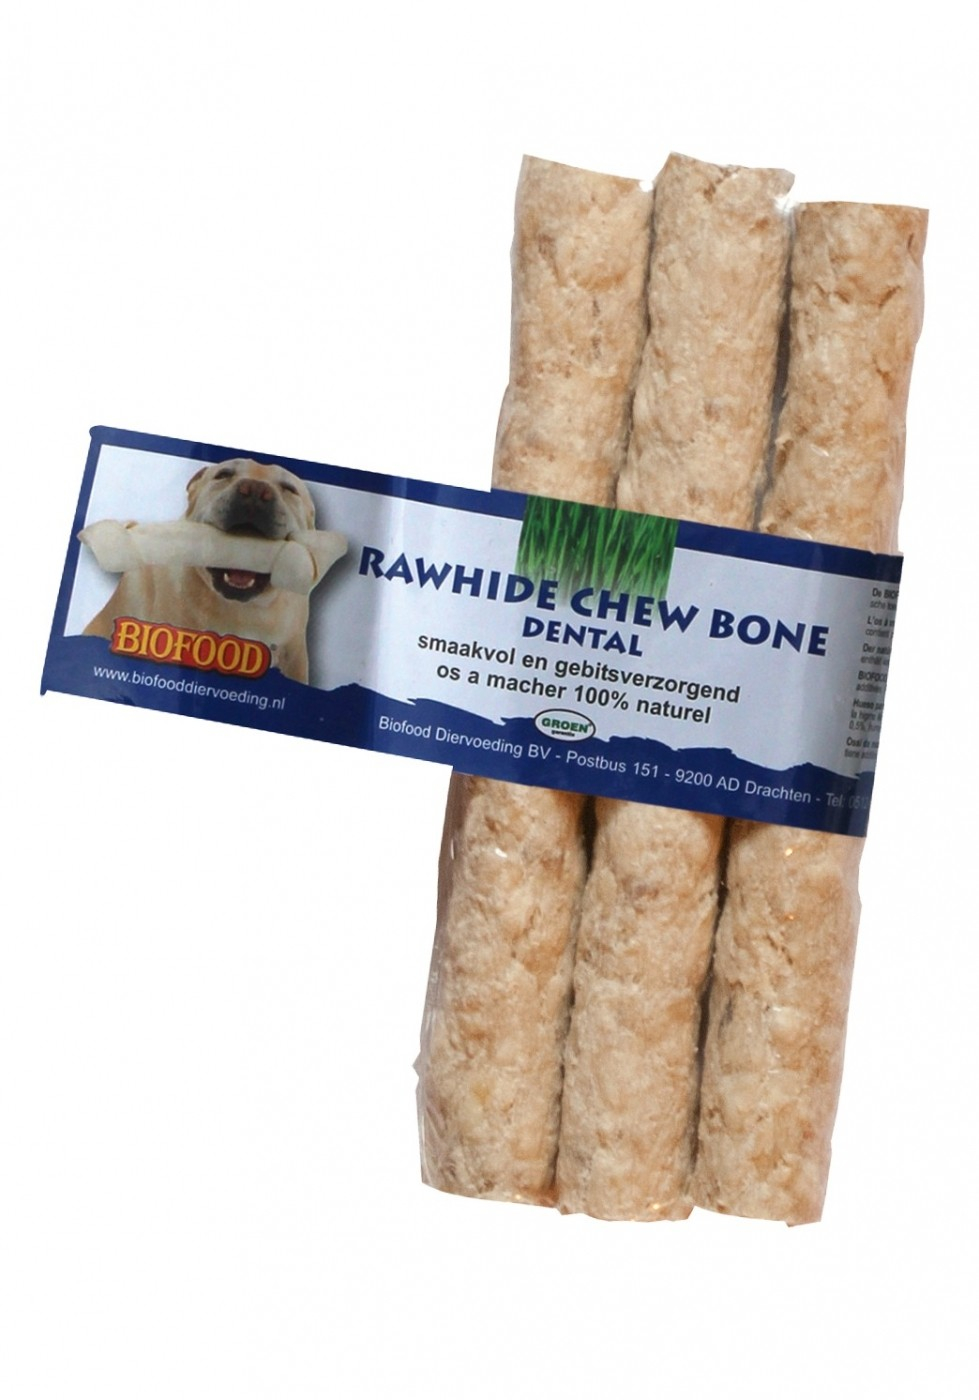 BIOFOOD Hueso Dental 100% Natural Munchy Snack para Perro